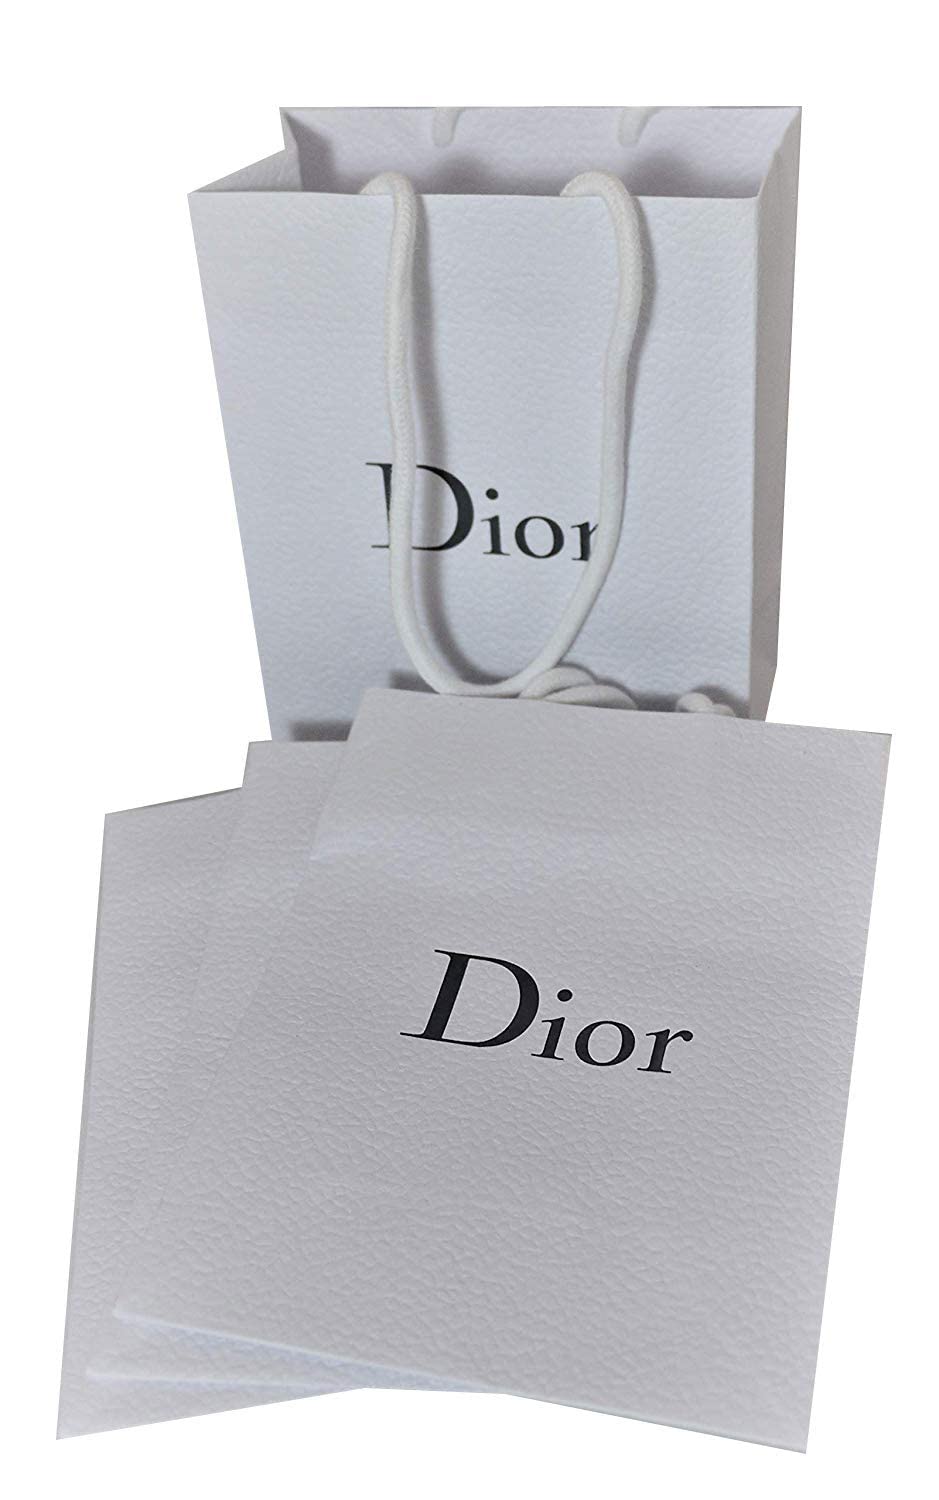 dior small paper bag on Mercari  Small paper bags Print on paper bags Paper  bag album